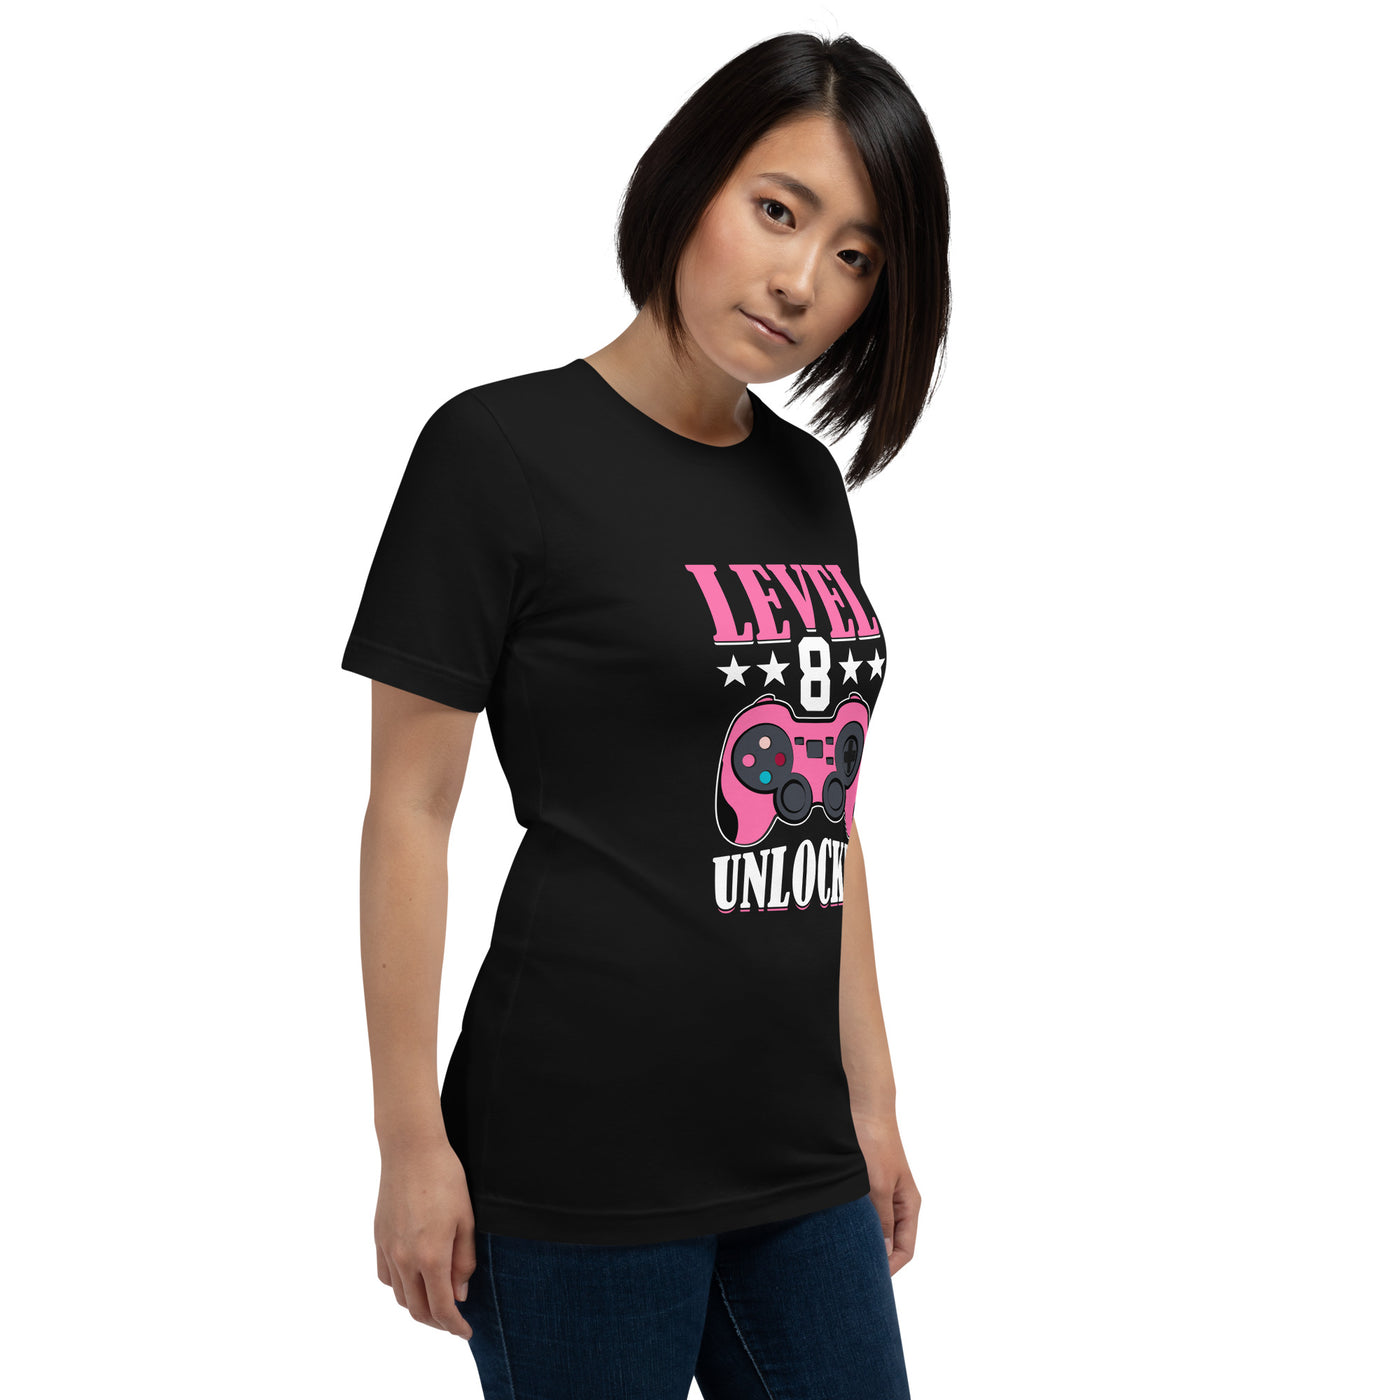 Level 8 Unlocked - Unisex t-shirt